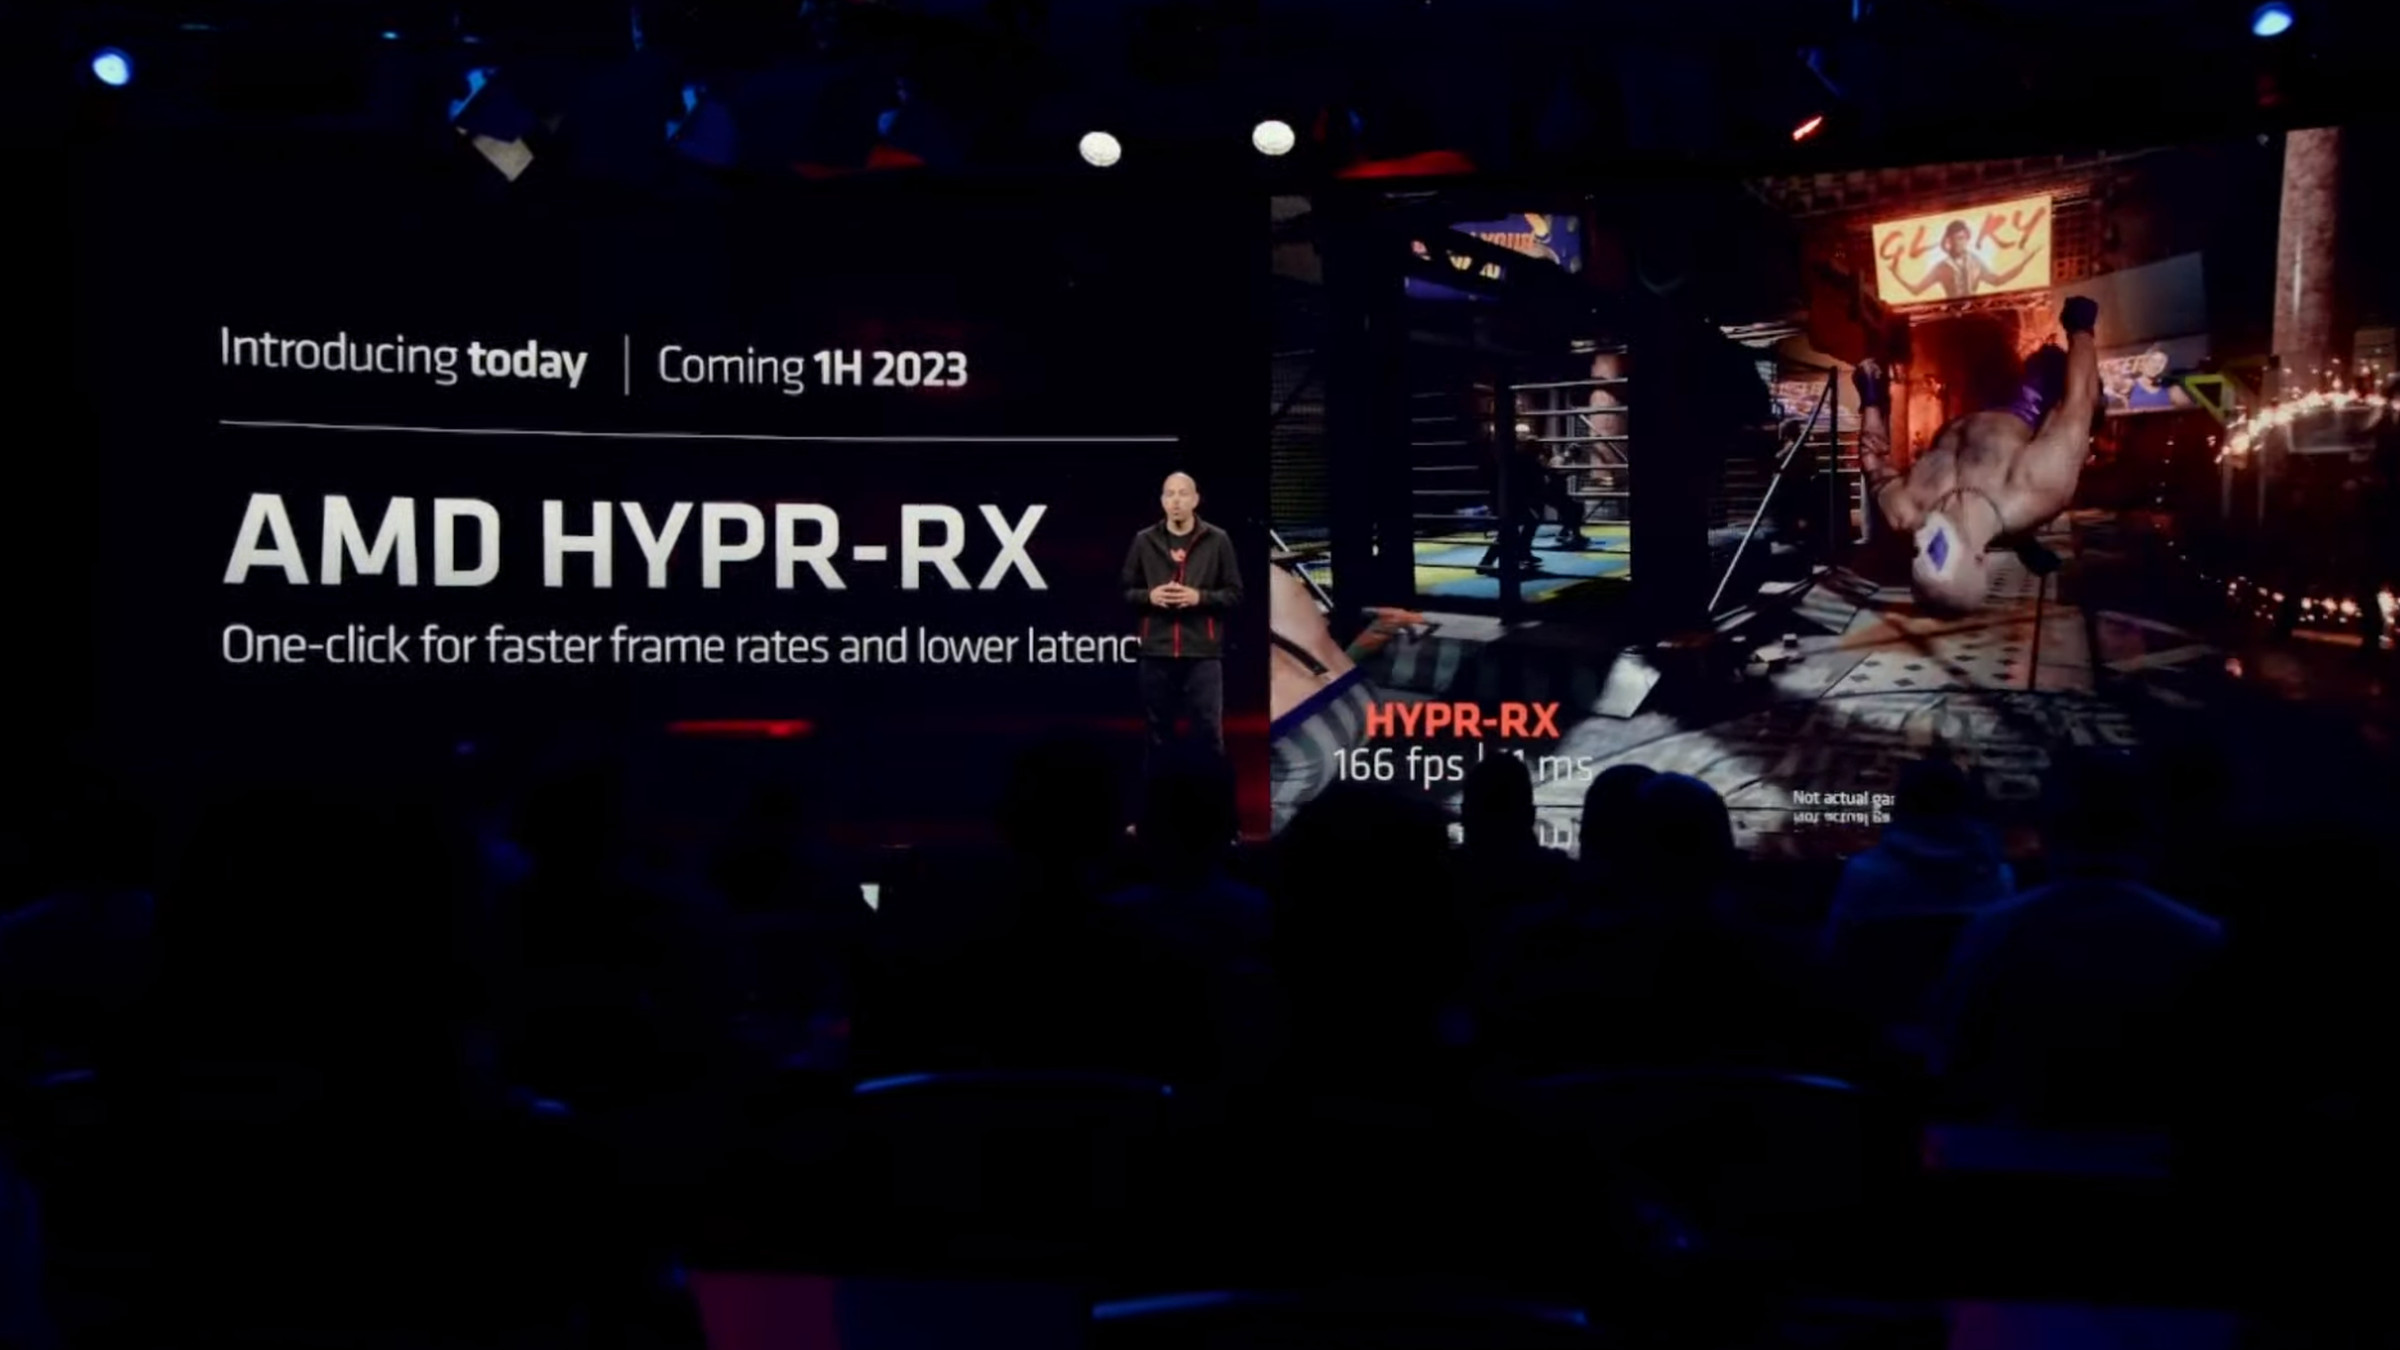 Captura de tela do slide da AMD para seu recurso Hypr-RX.